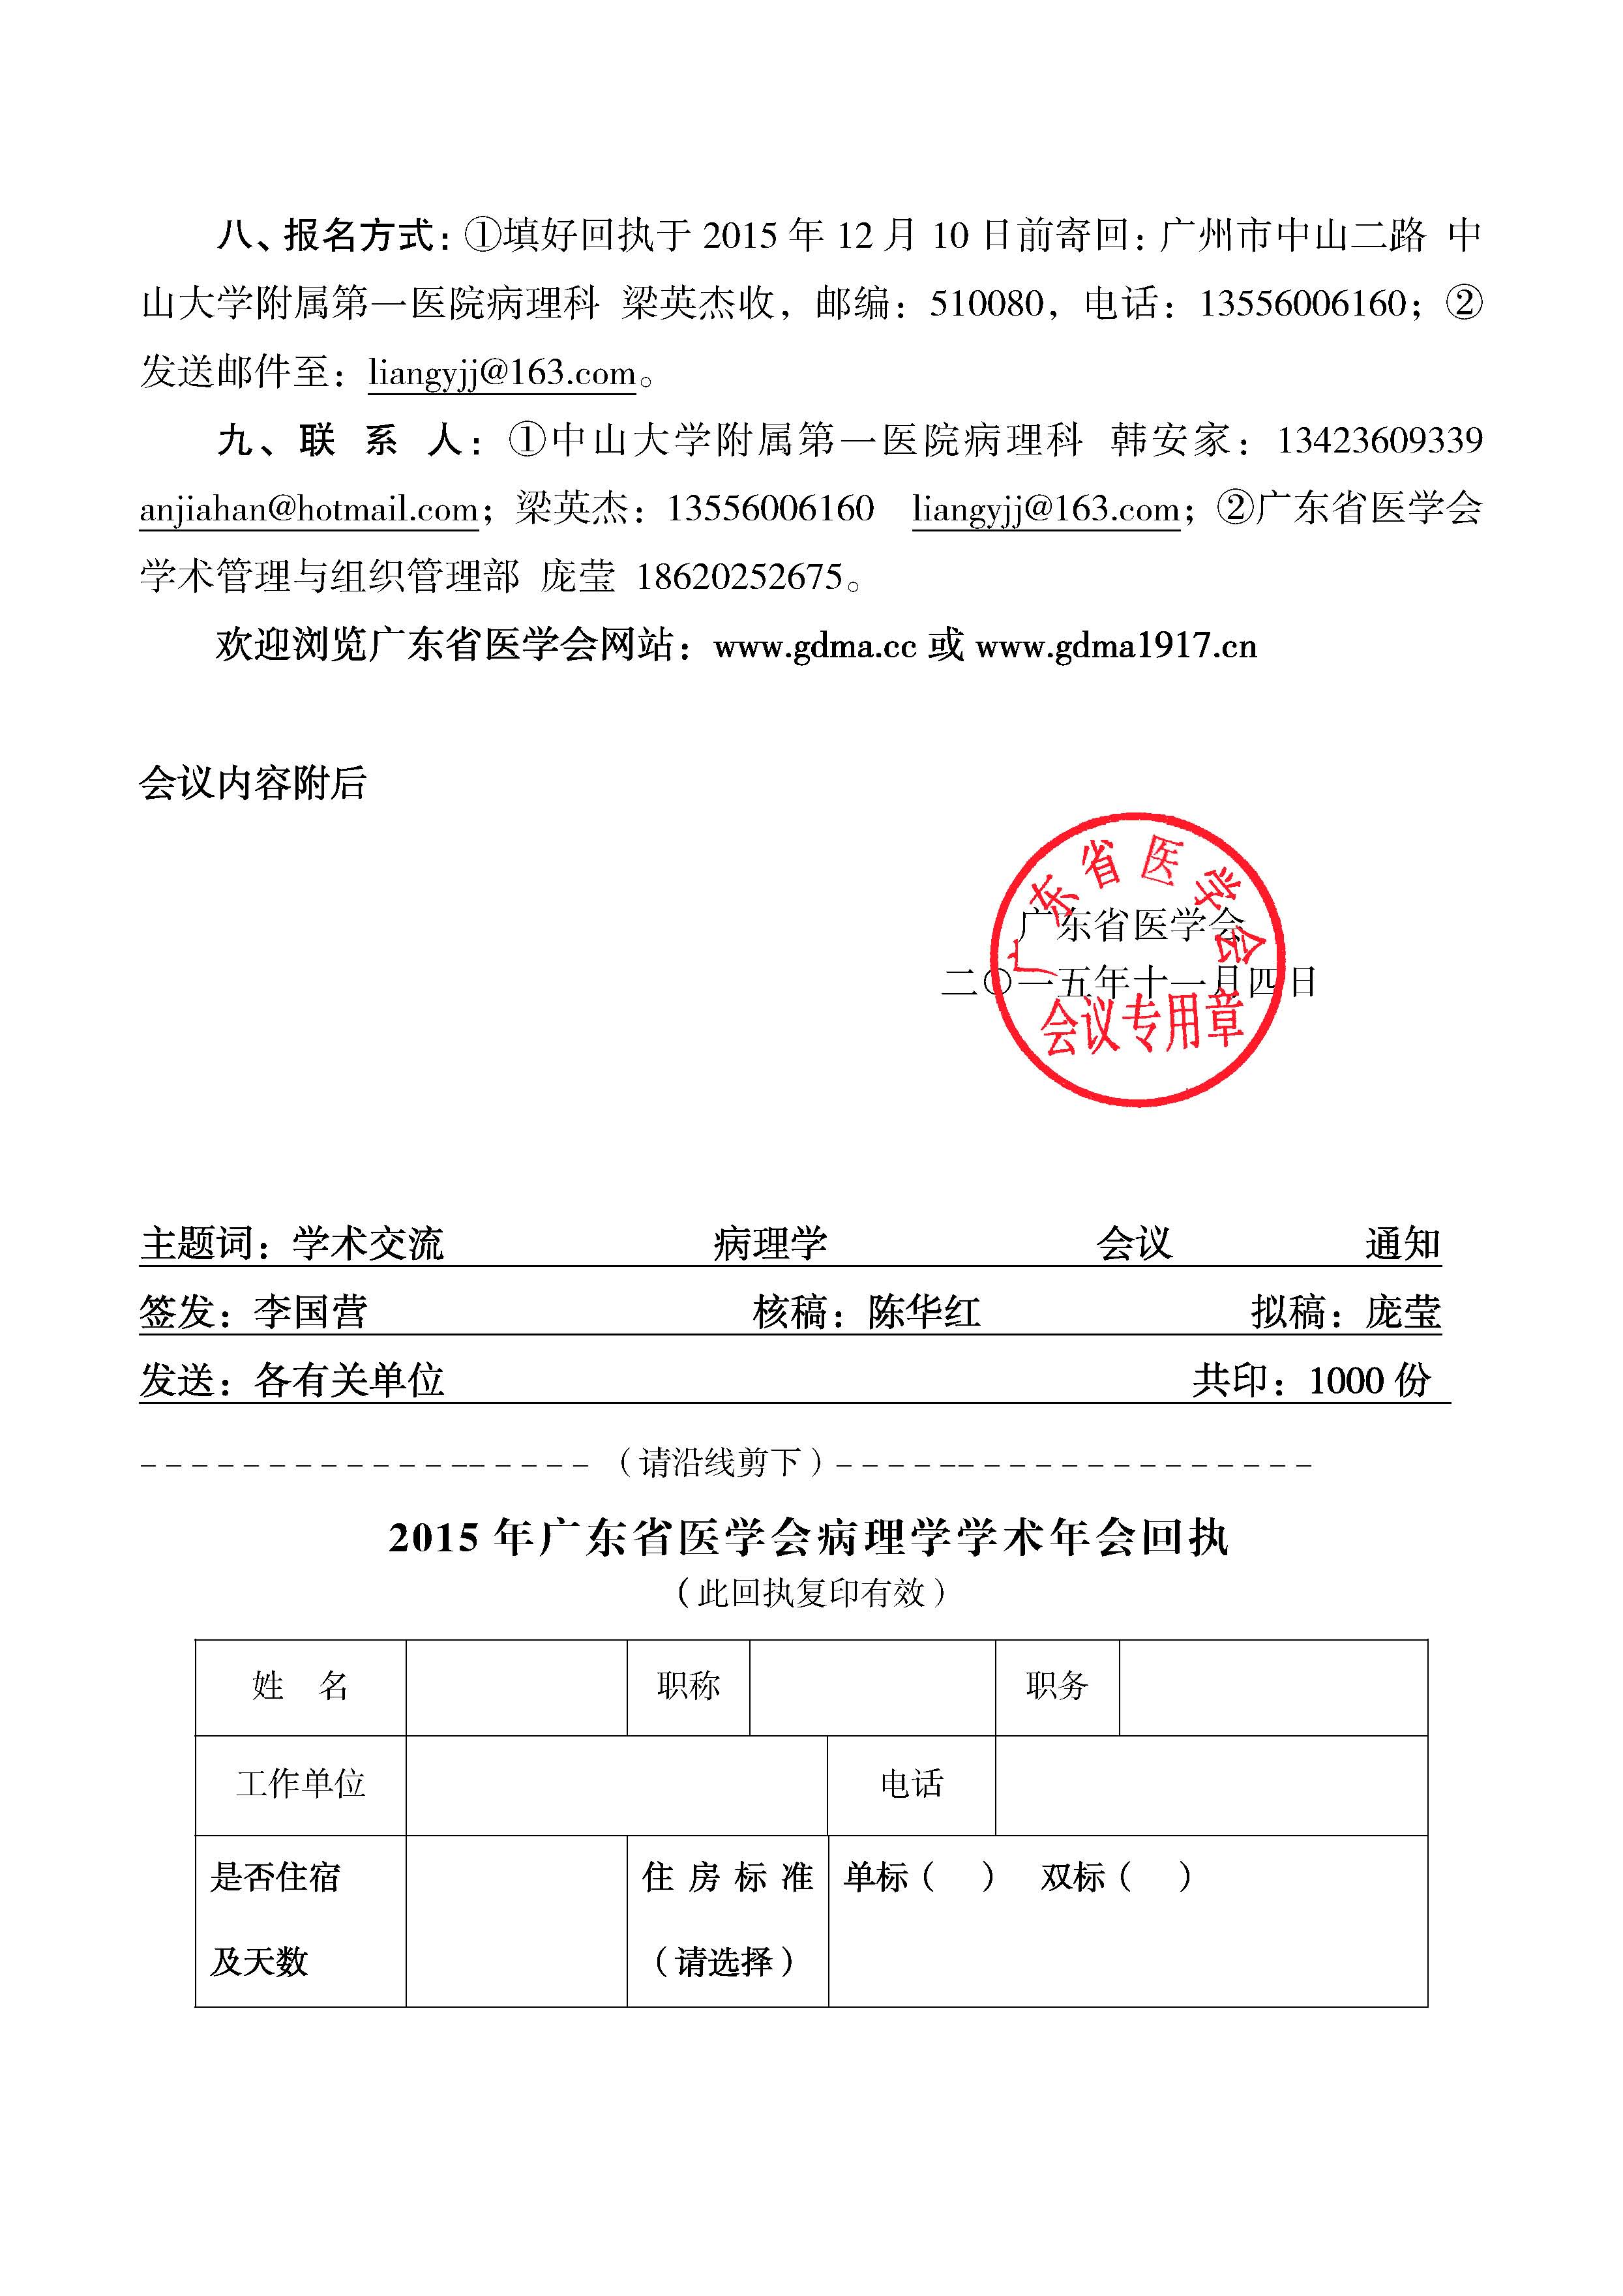 关于召开2015年广东省医学会病理学学术年会的通知(第二轮)